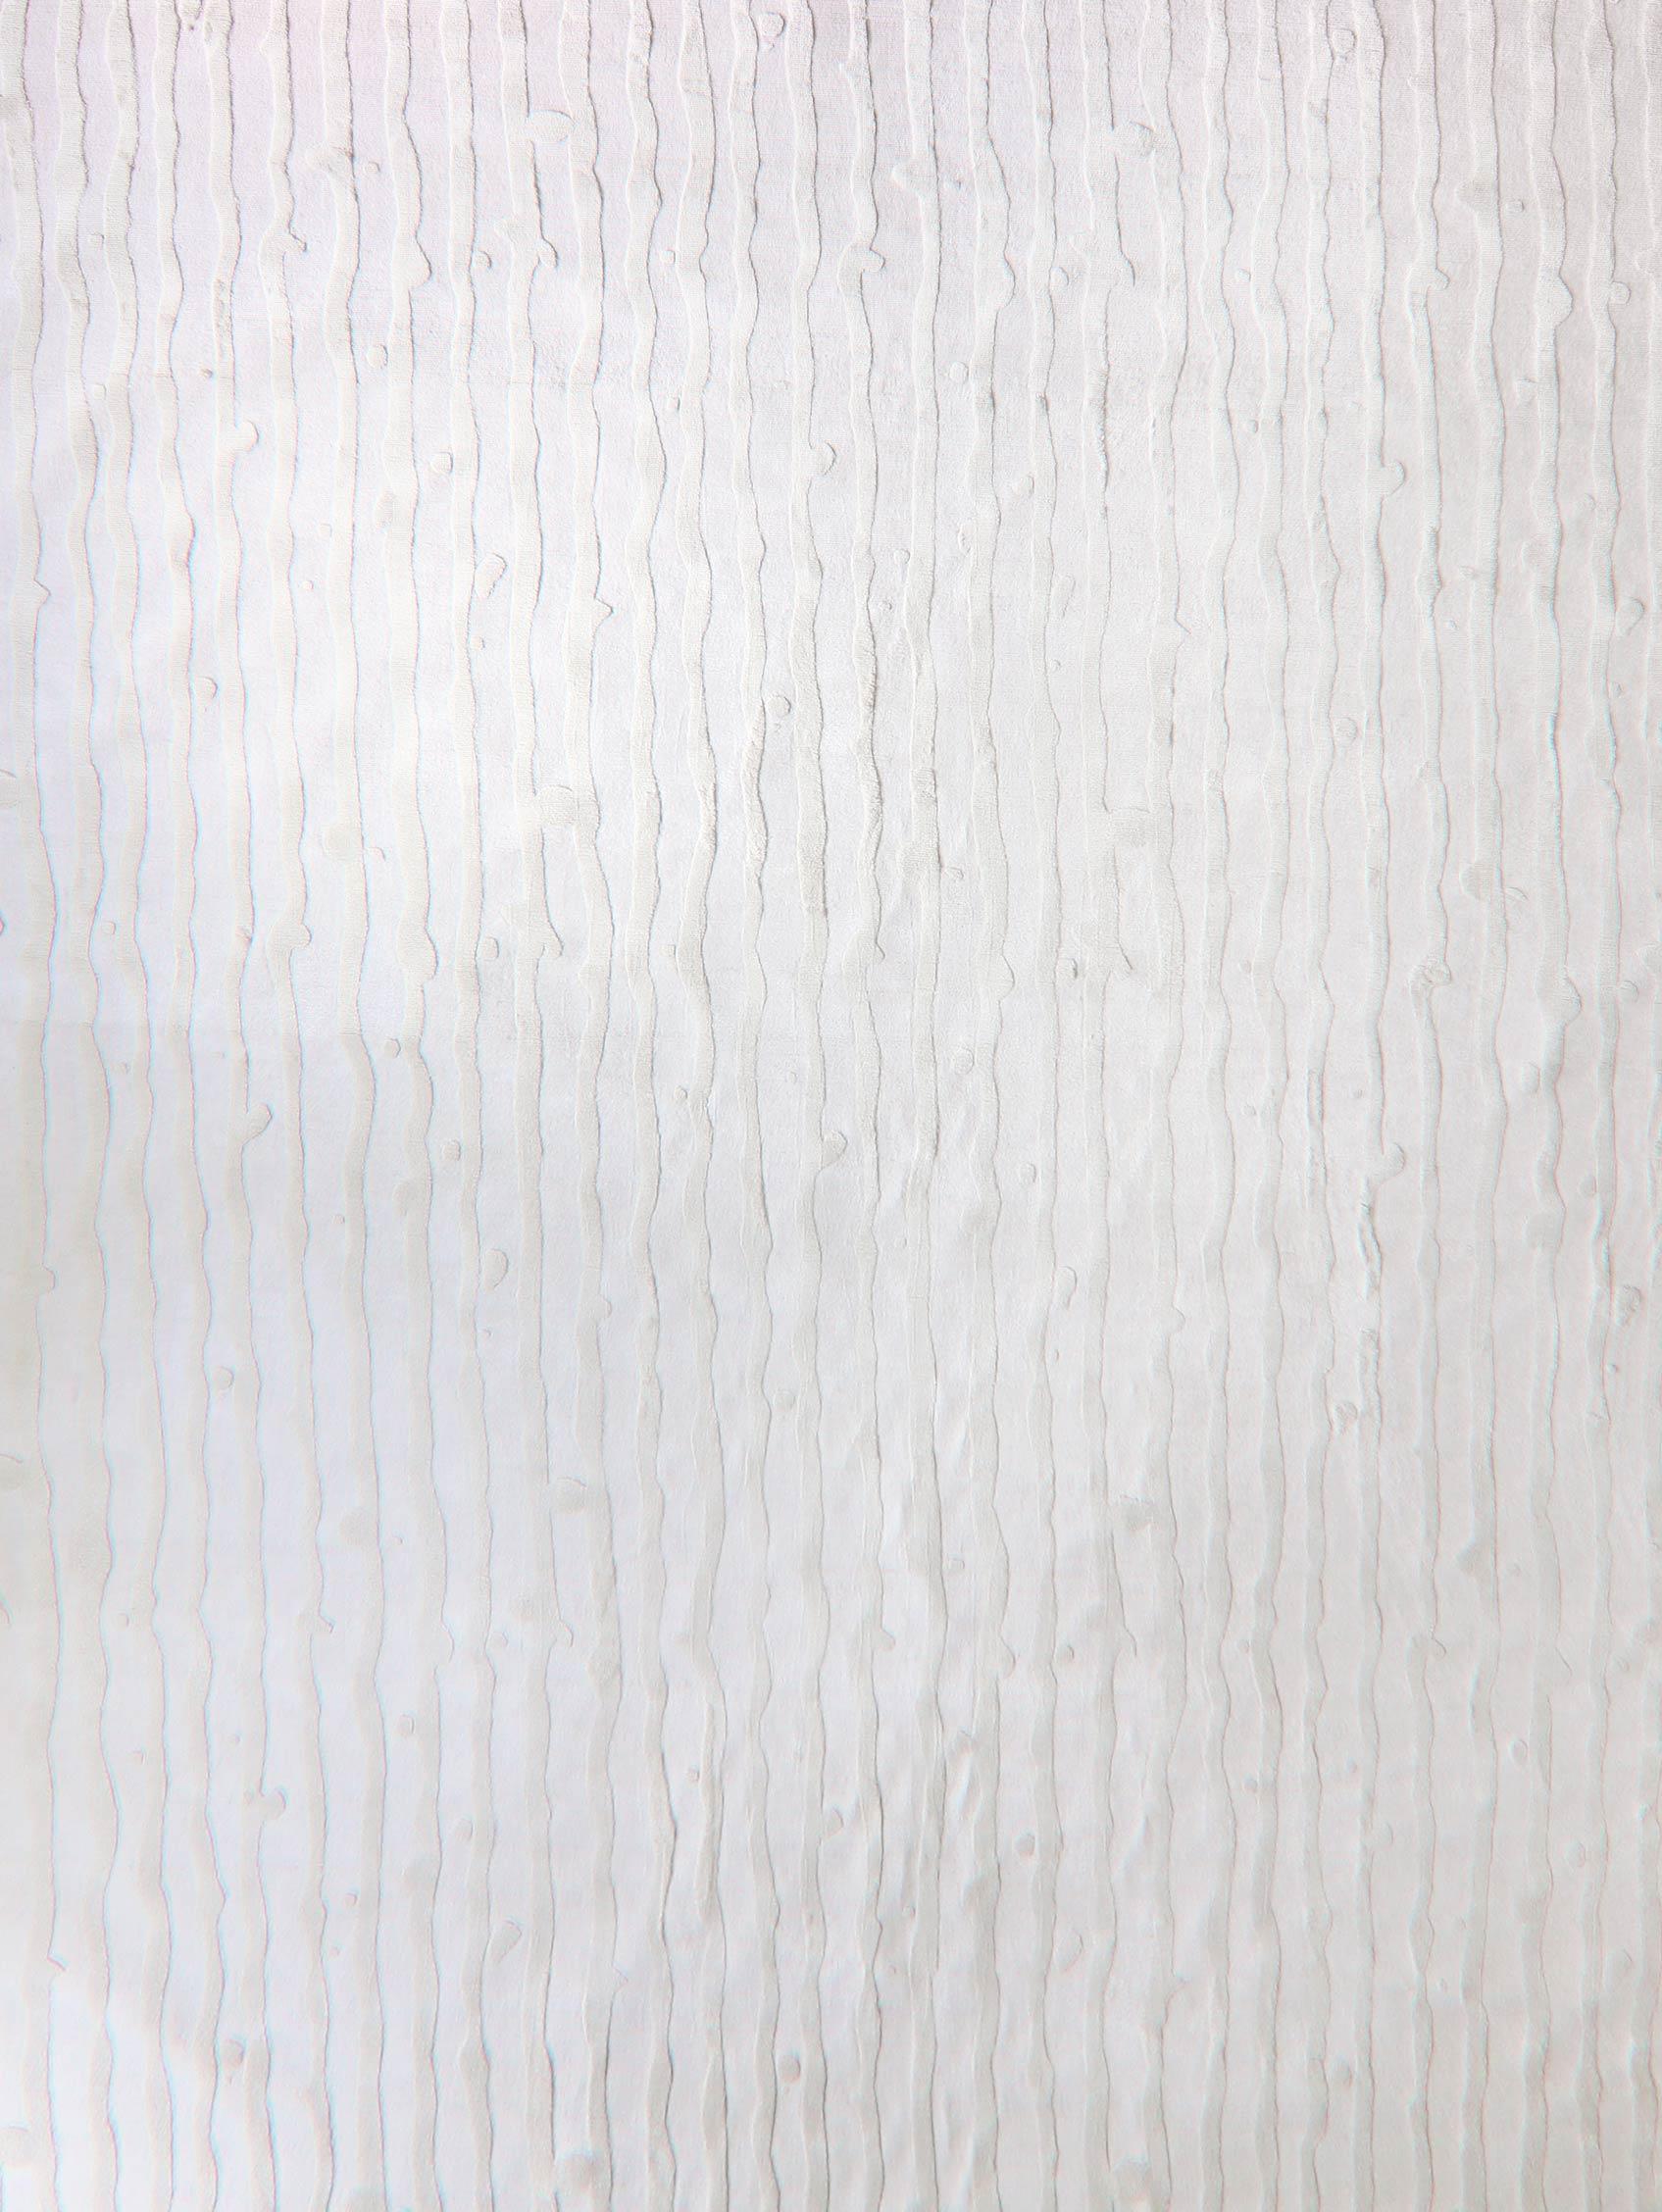 Drippy Stripe Lefko Weiß Handgeknüpfter Teppich von Eskayel
Abmessungen: D 9' x H 12'
Florhöhe: 4 mm, 3 mm.
MATERIALIEN: Merinowolle, Seide.

Die handgeknüpften Teppiche von Eskayel werden auf Bestellung gewebt und können in verschiedenen Größen,